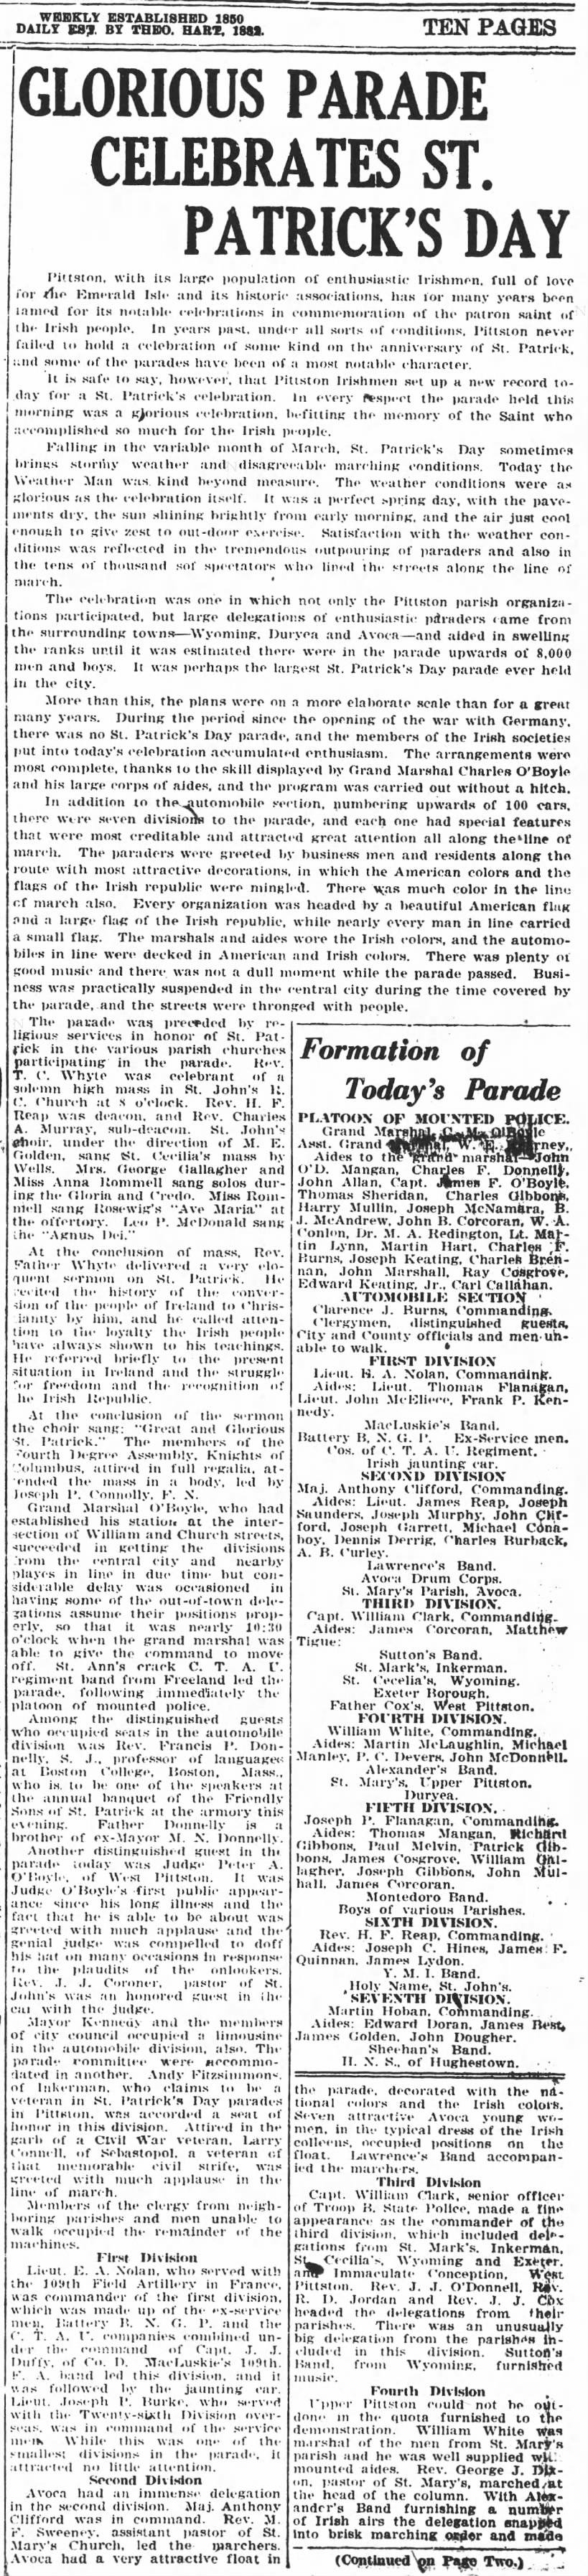 St patrick's Parade 1921